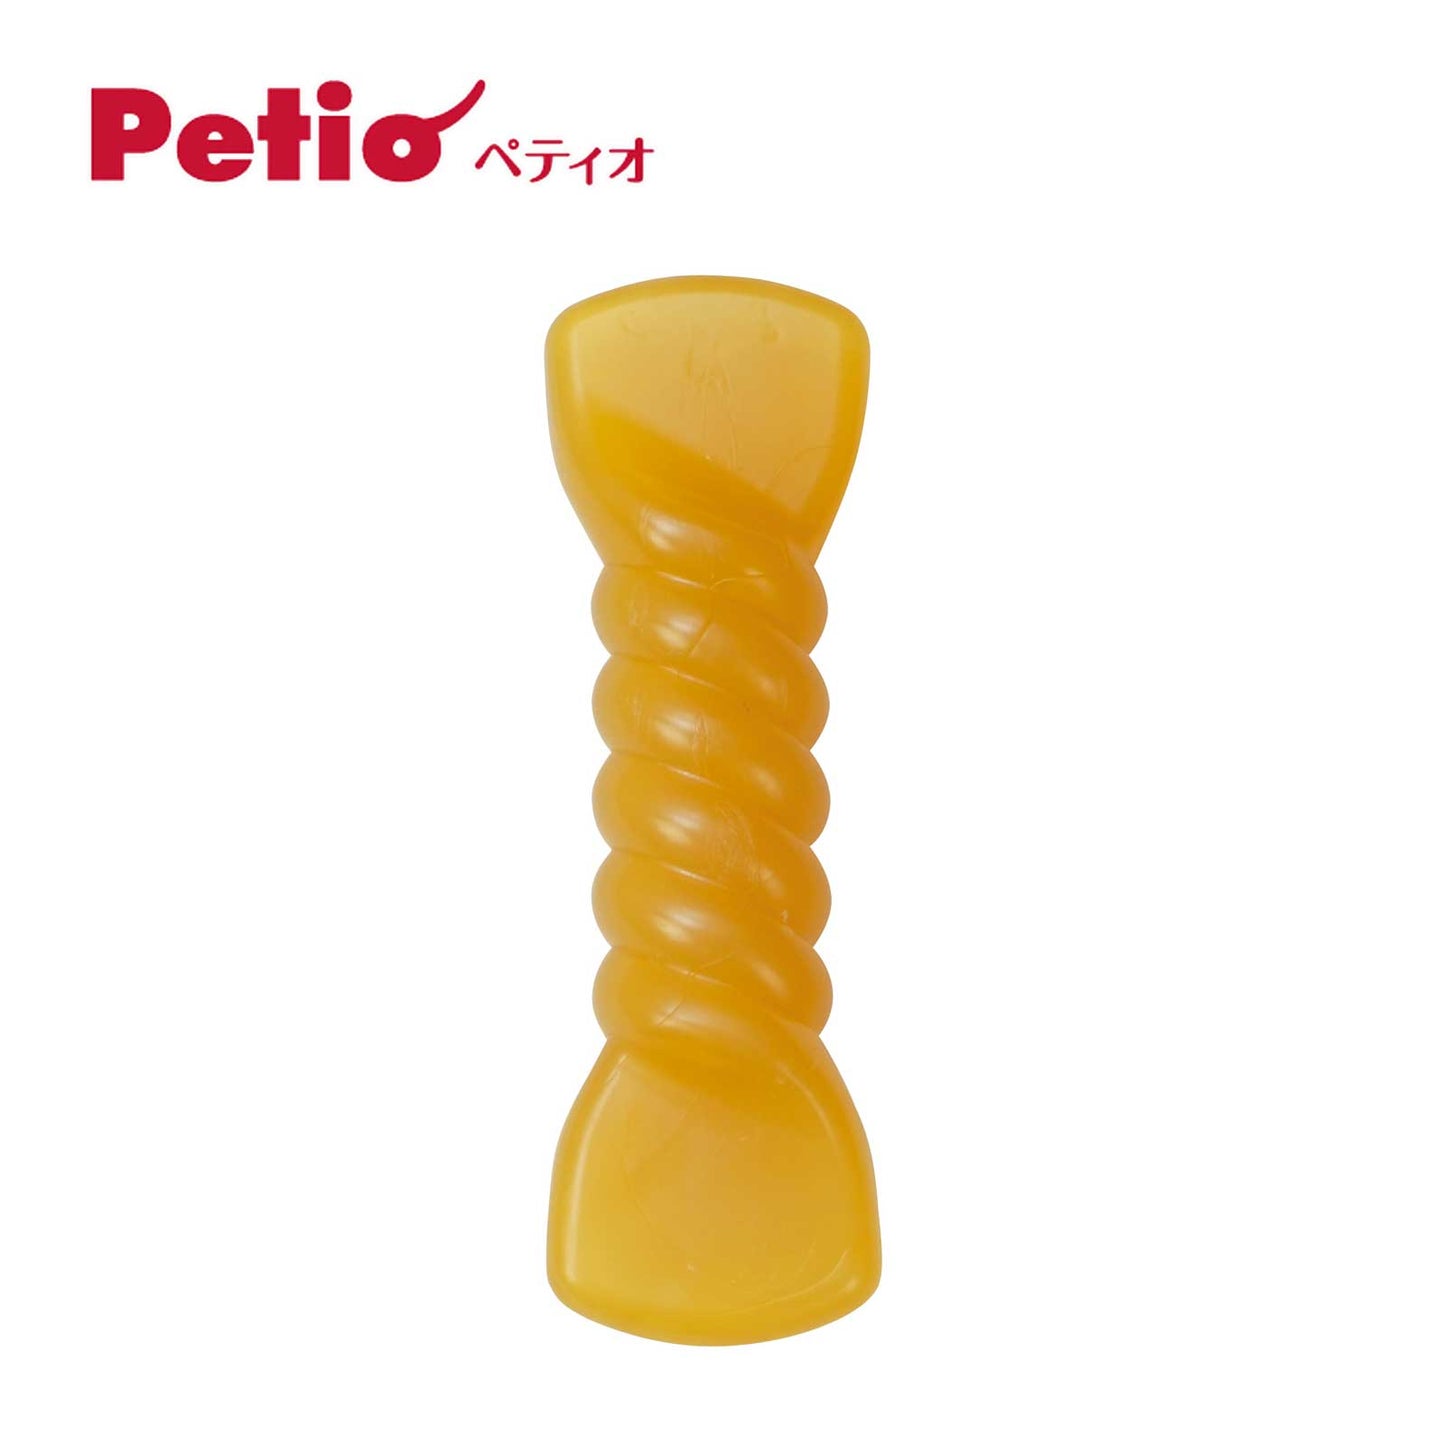 Petio Kanderu Twisted Corn Chewing Dental Toy Chicken Flavor